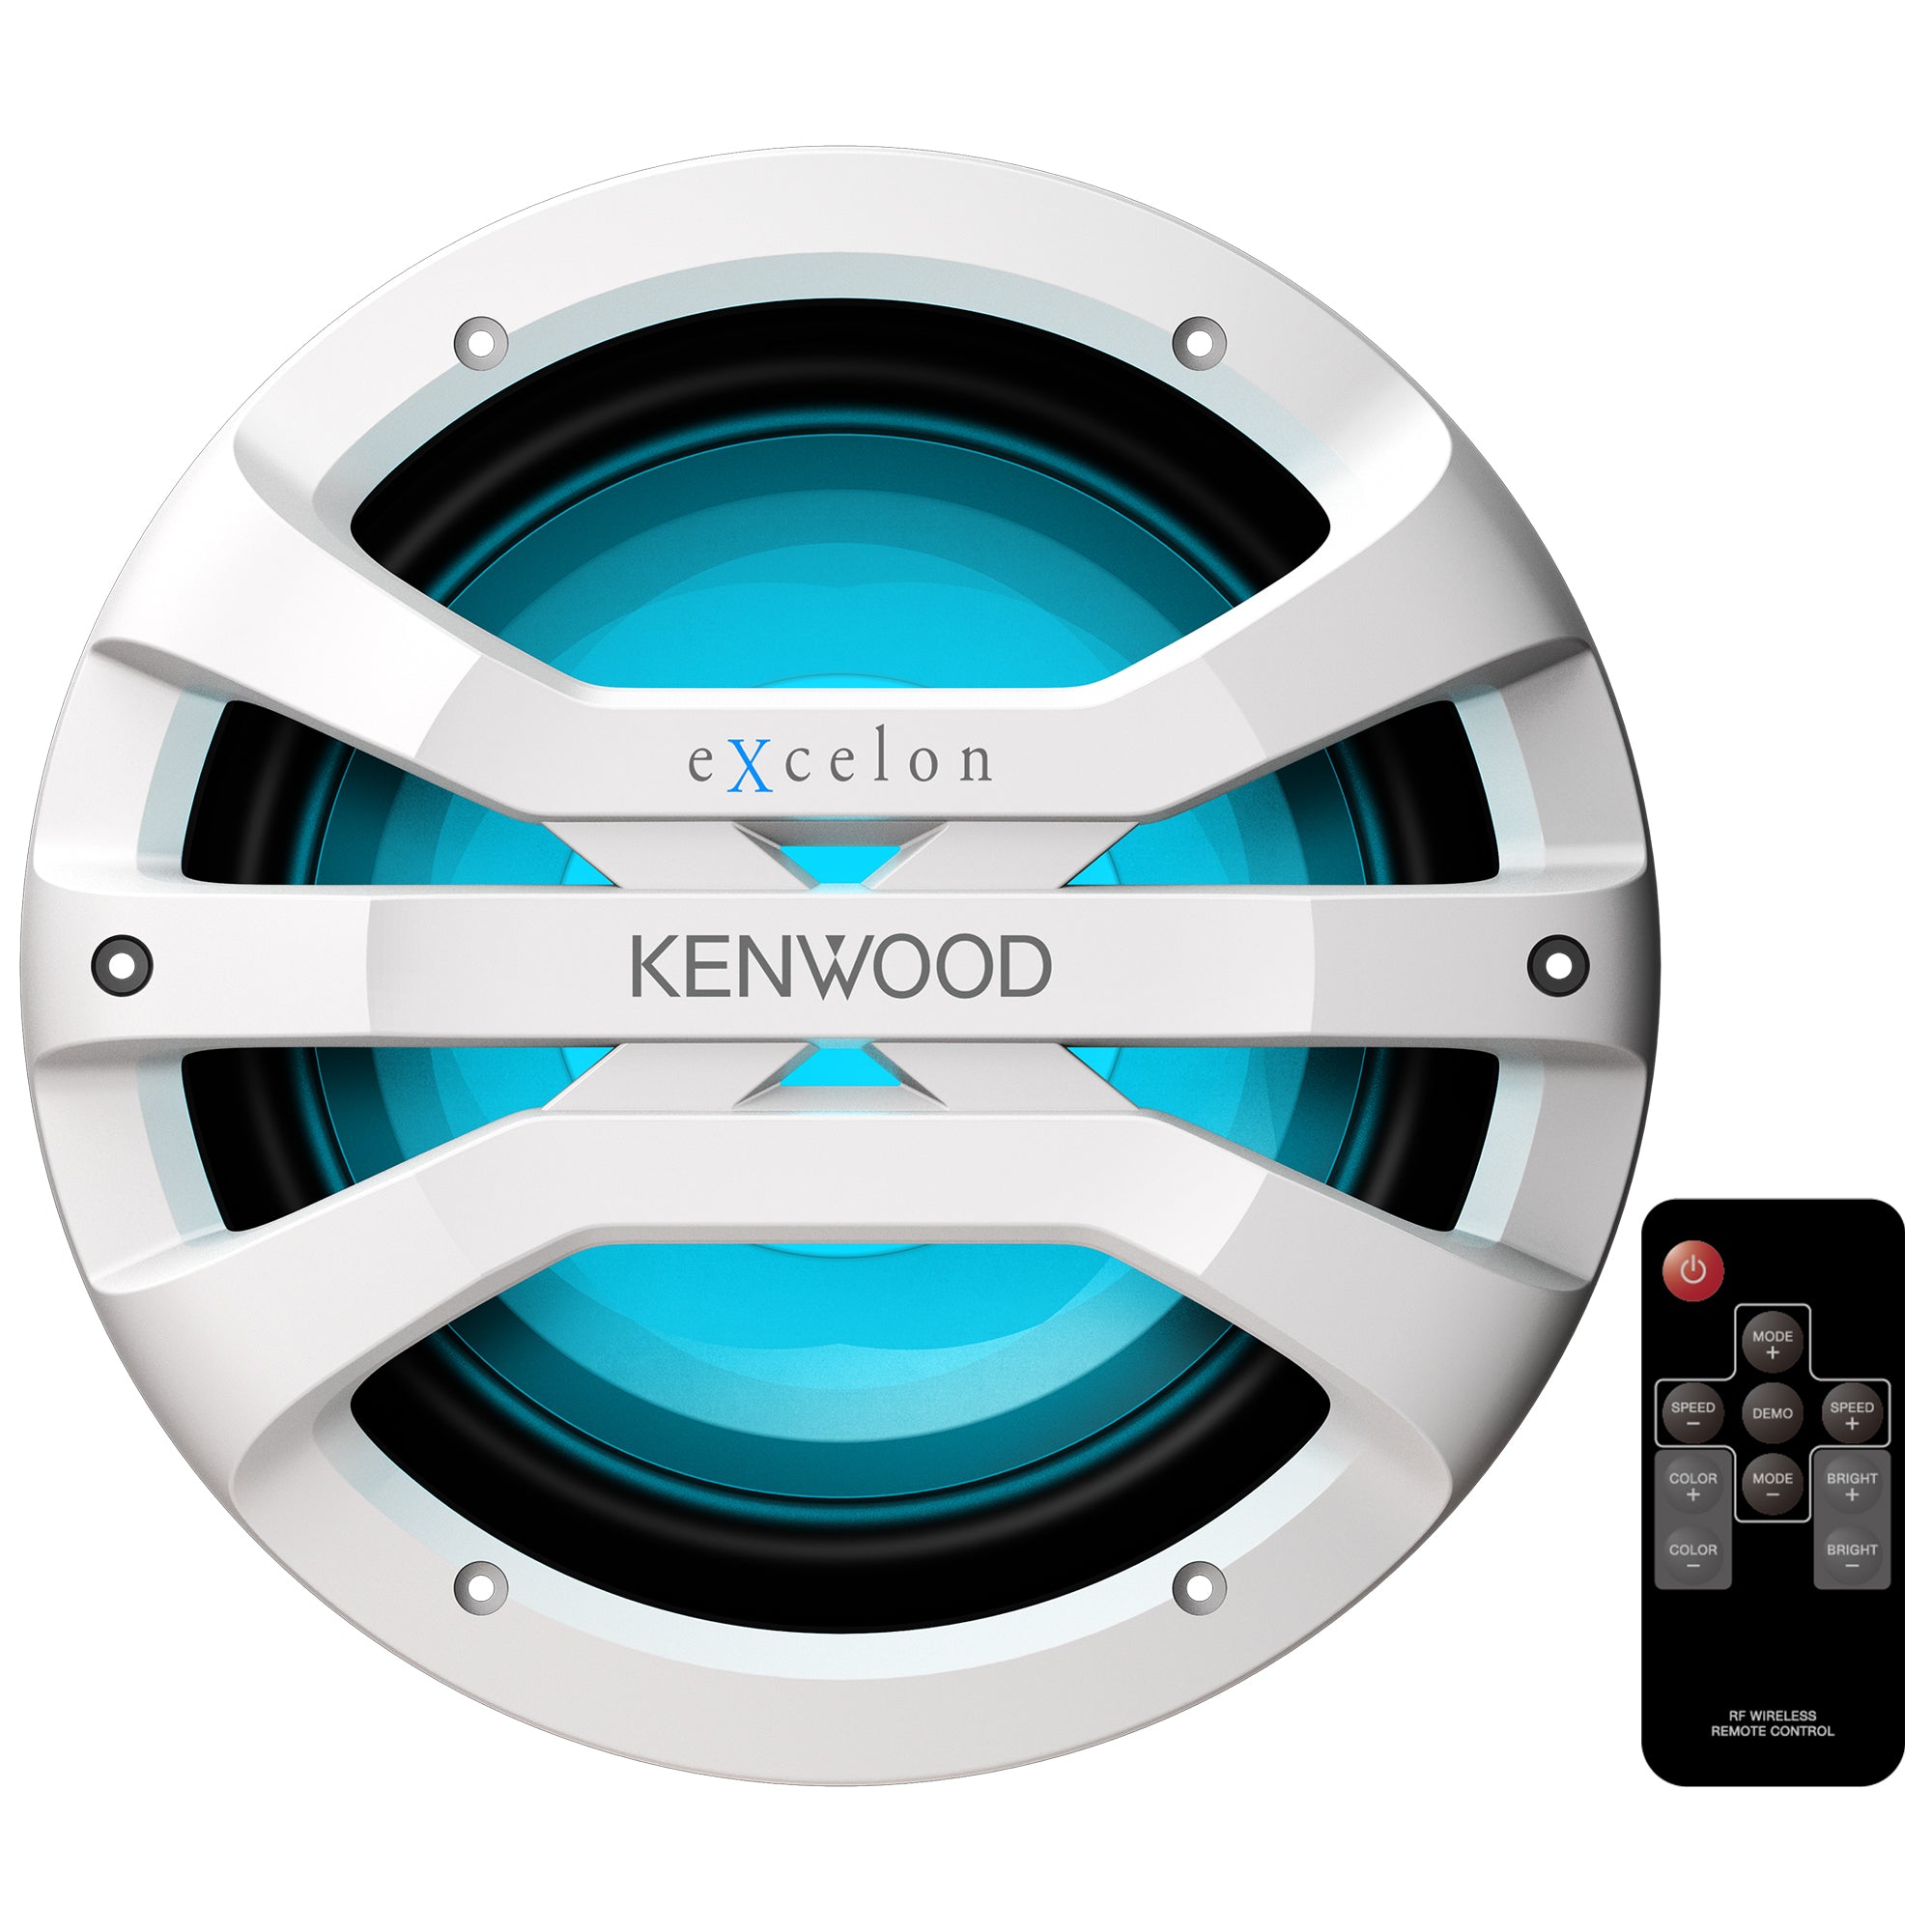 Kenwood, Kenwood XM1041WL, eXcelon 10" Single 4 Ohm Marine / Motorsports Subwoofer, White